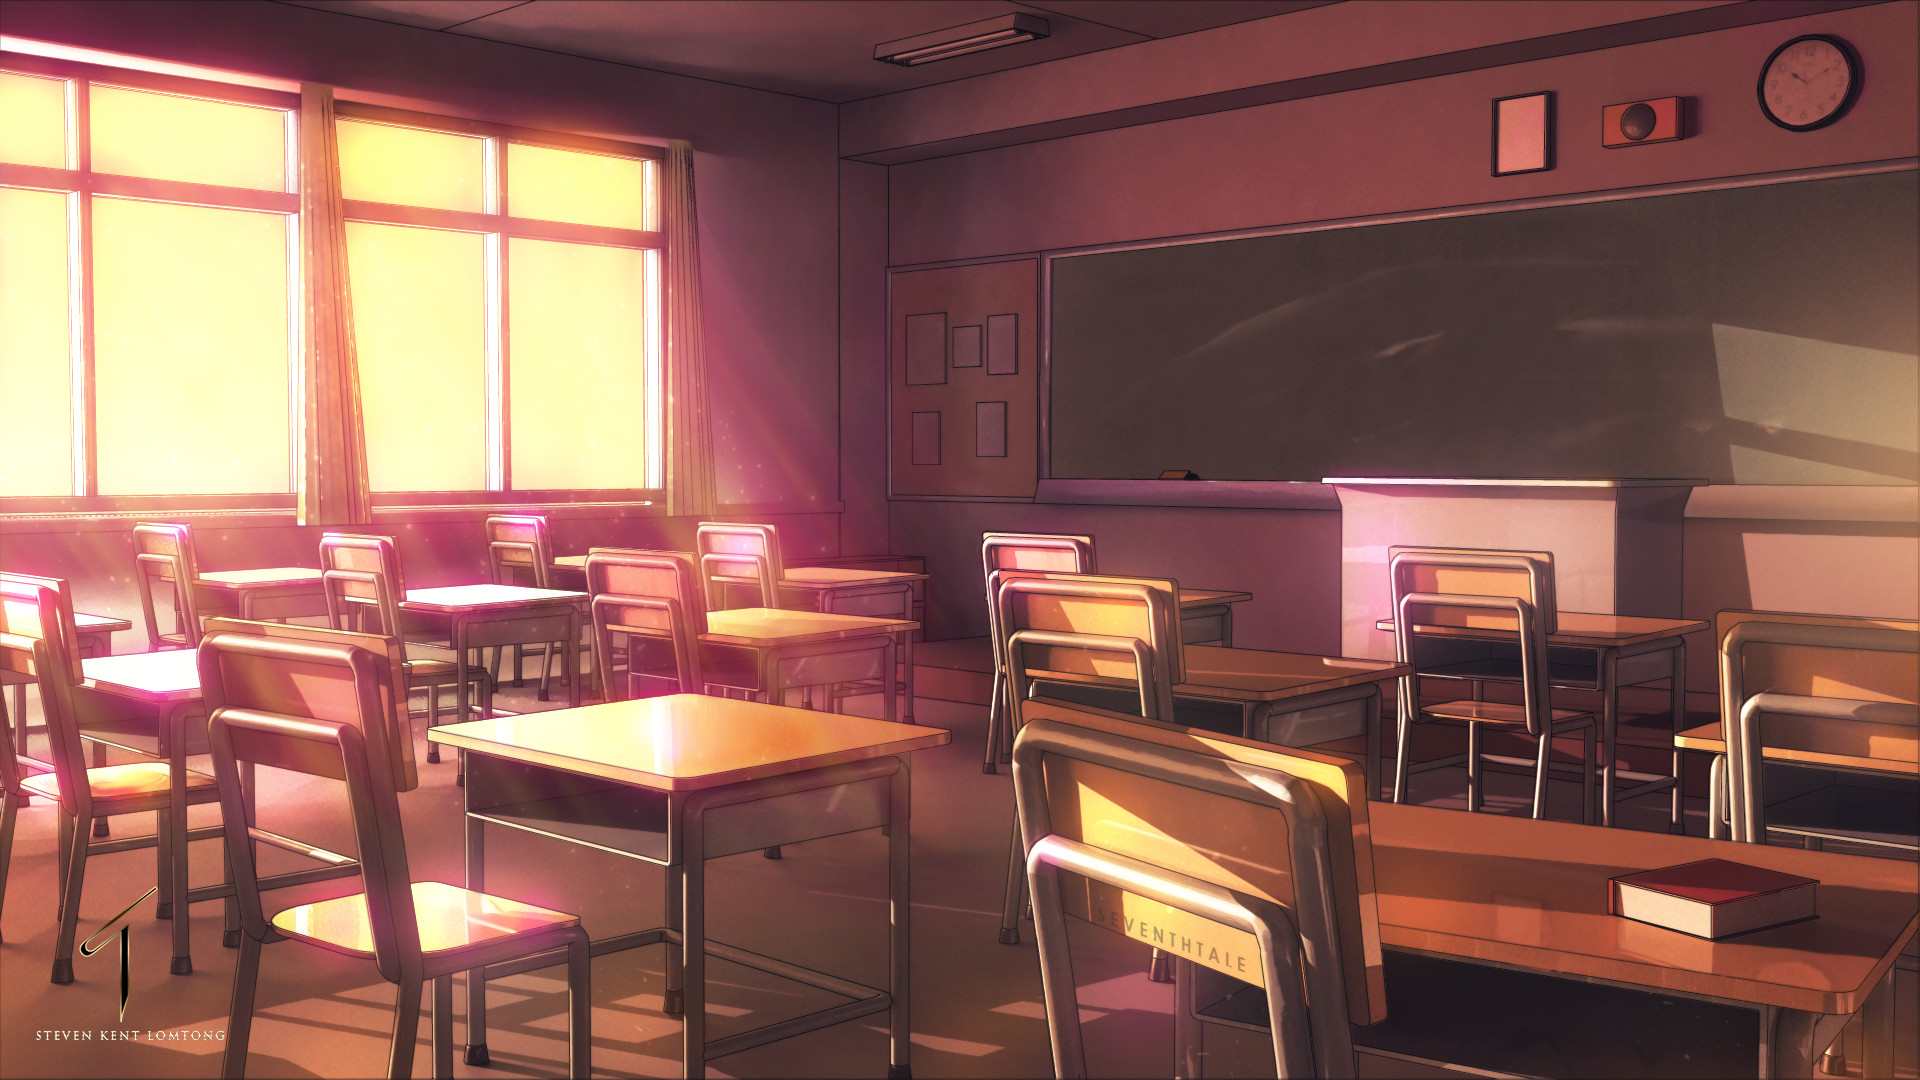 HD wallpaper: anime school, classroom, desks, wind, lonely boy, seat, table  | Wallpaper Flare